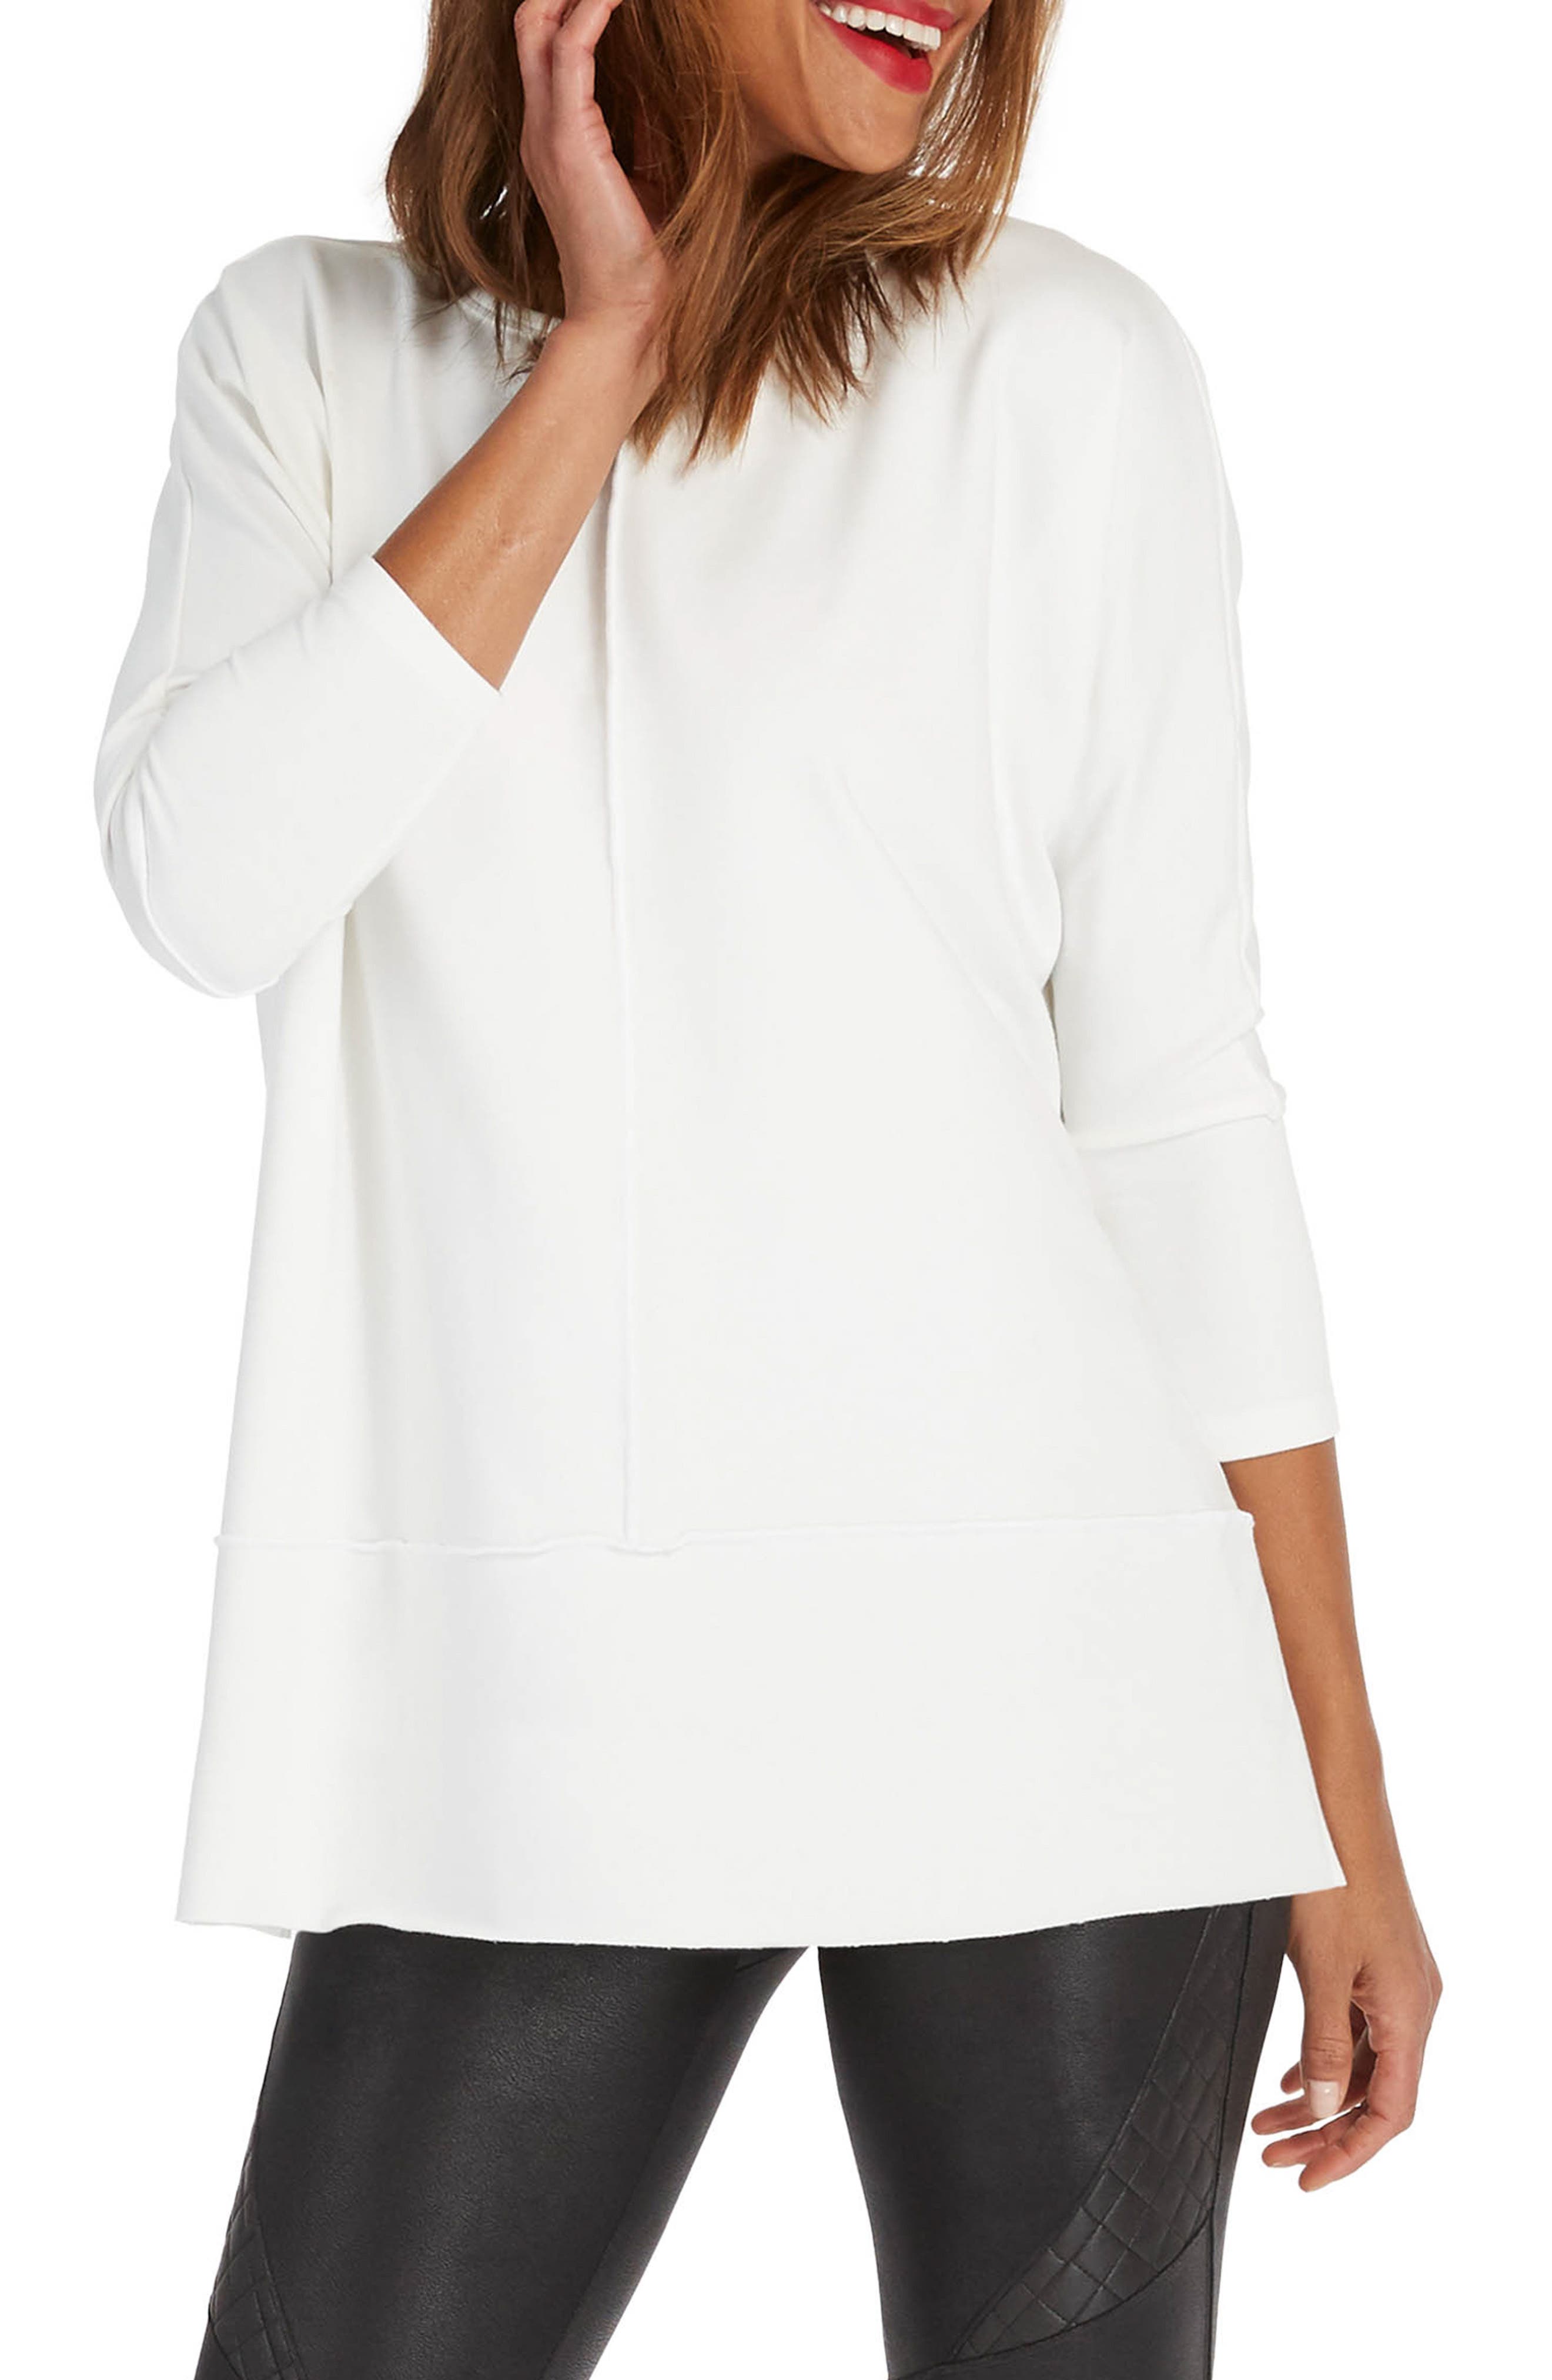 New Womens Ladies White zip Hooded Sweatshirt Hoodie Top Size 18 20 